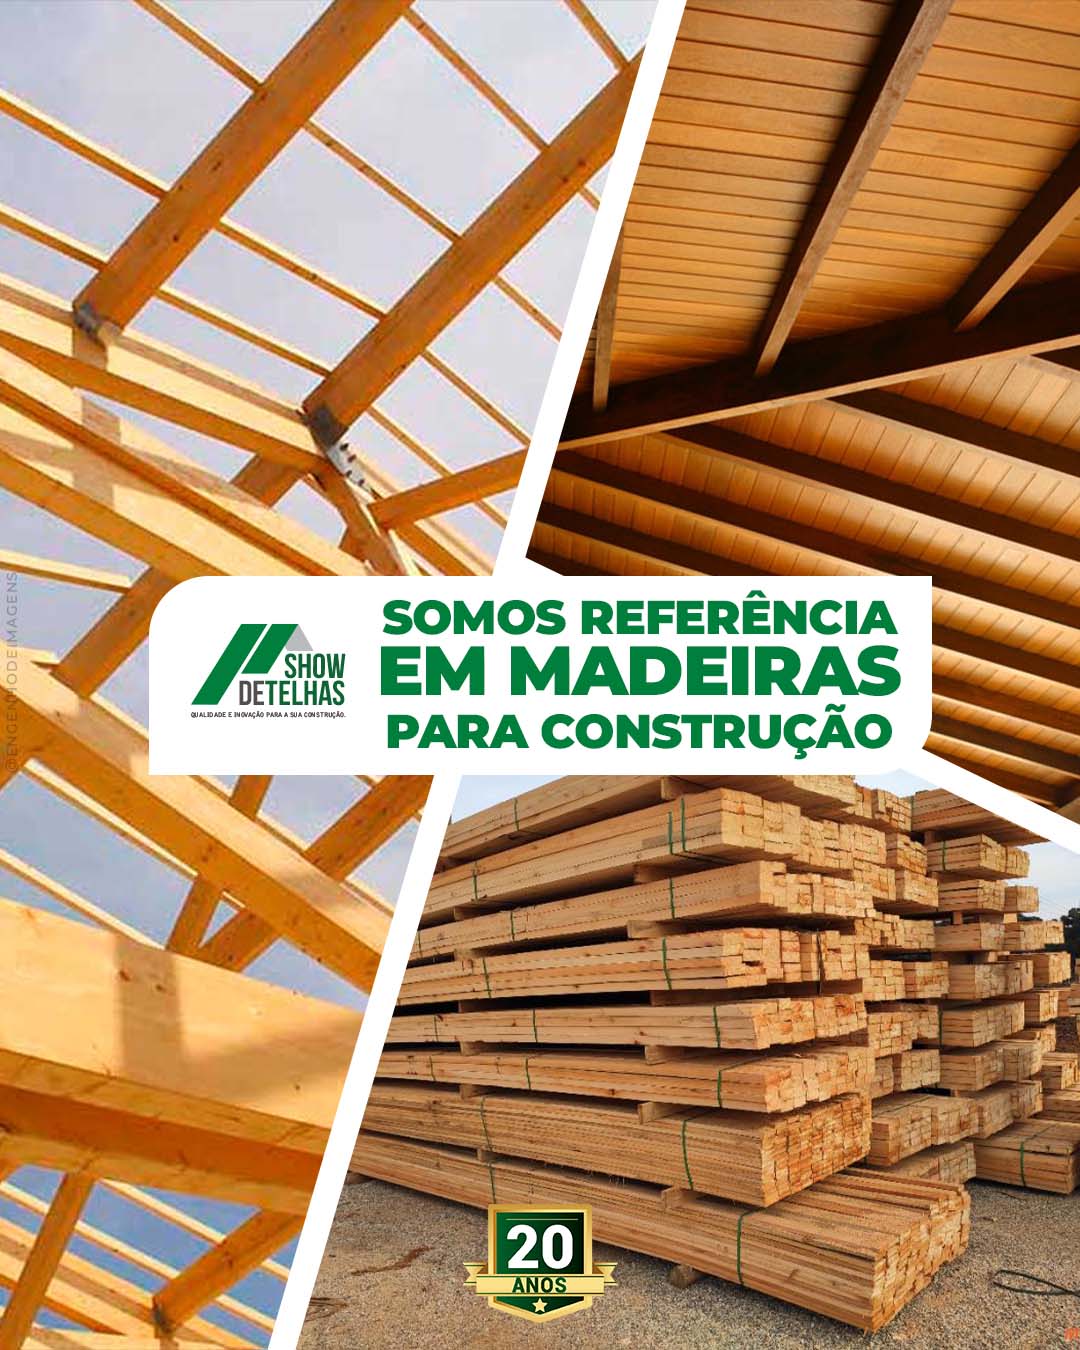 Fundamentando ideais com qualidade e inovação: explore nossas madeiras premium!